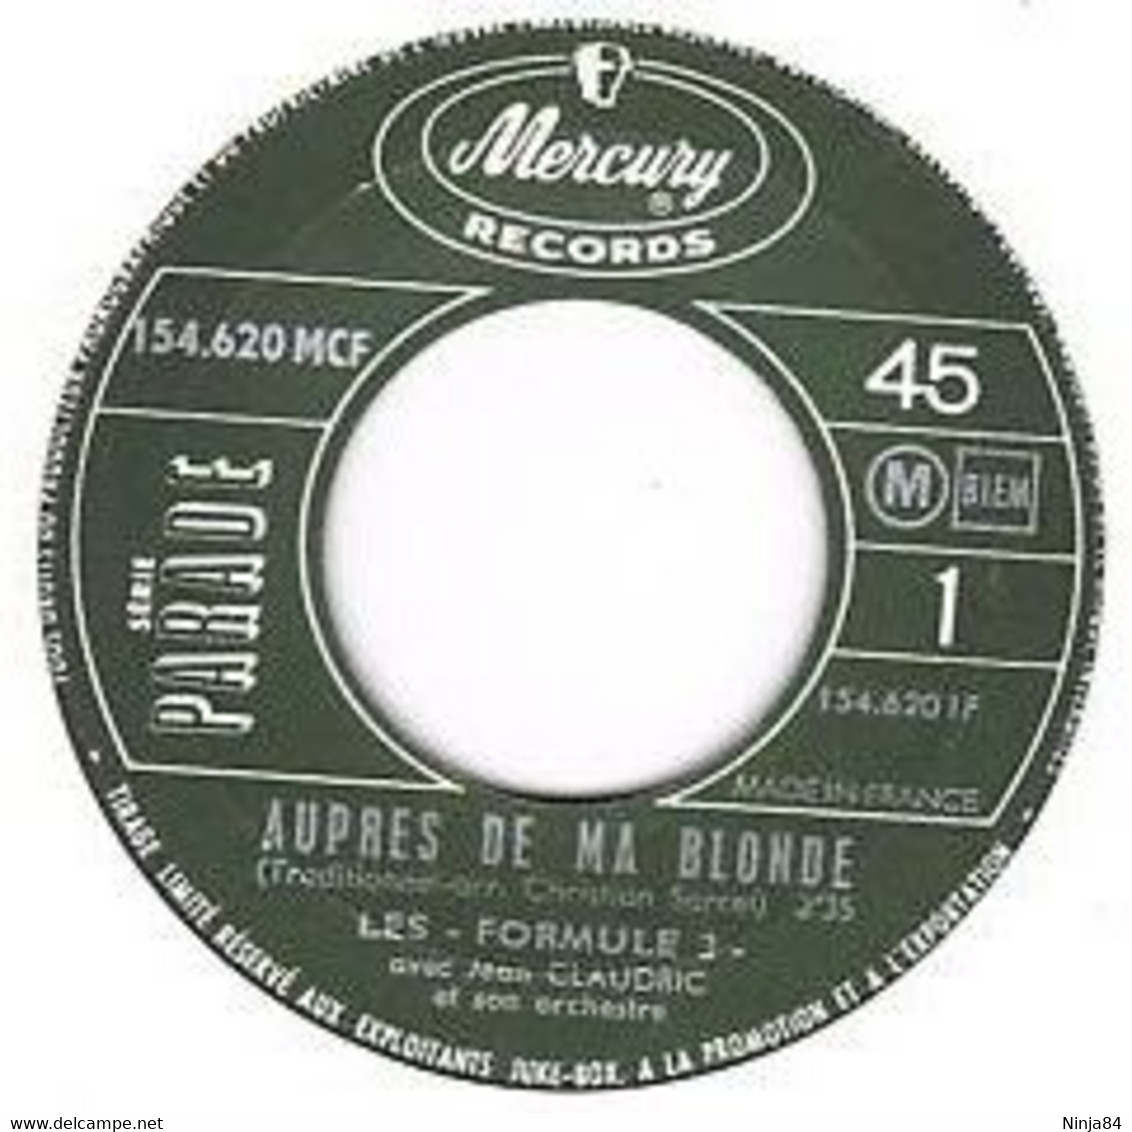 SP 45 RPM (7")  Les Formule 3  "  Auprès De Ma Blonde  " - Other - French Music